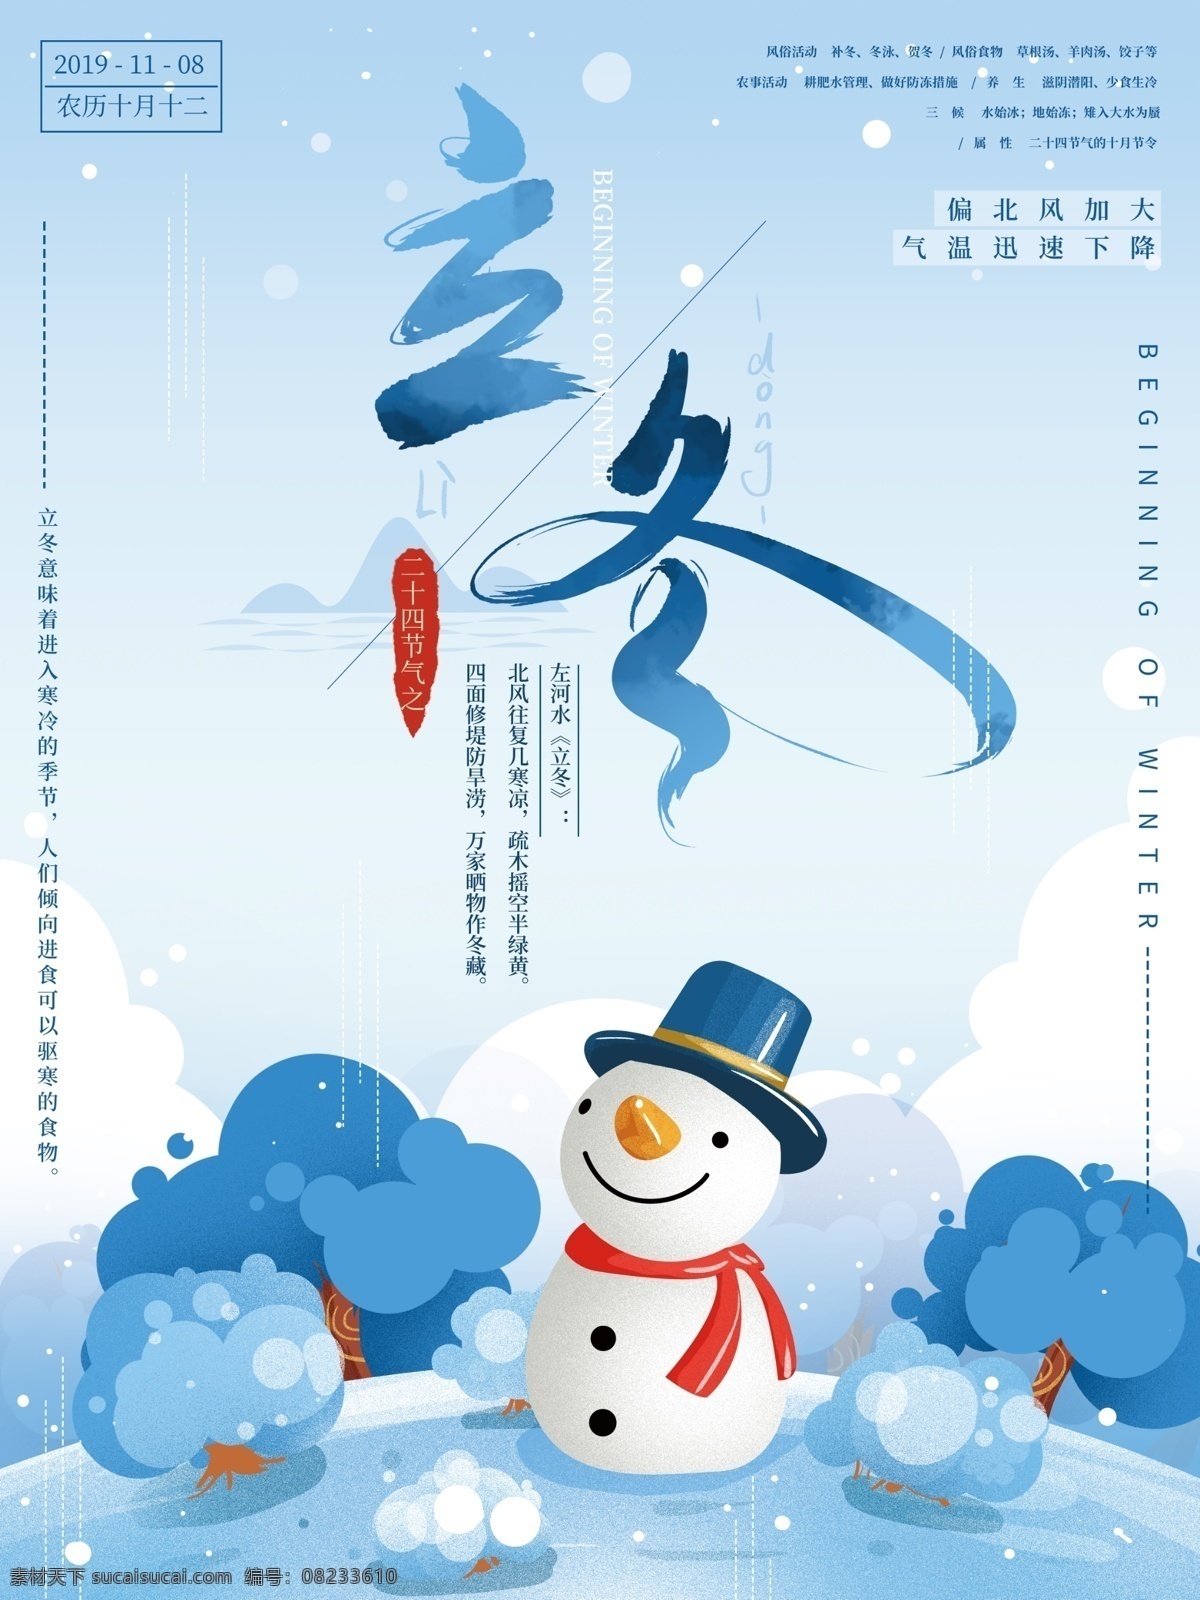 原创 手绘 立冬 节气 海报 简约 清新 蓝色 文艺 插画 冬 传统 节日海报